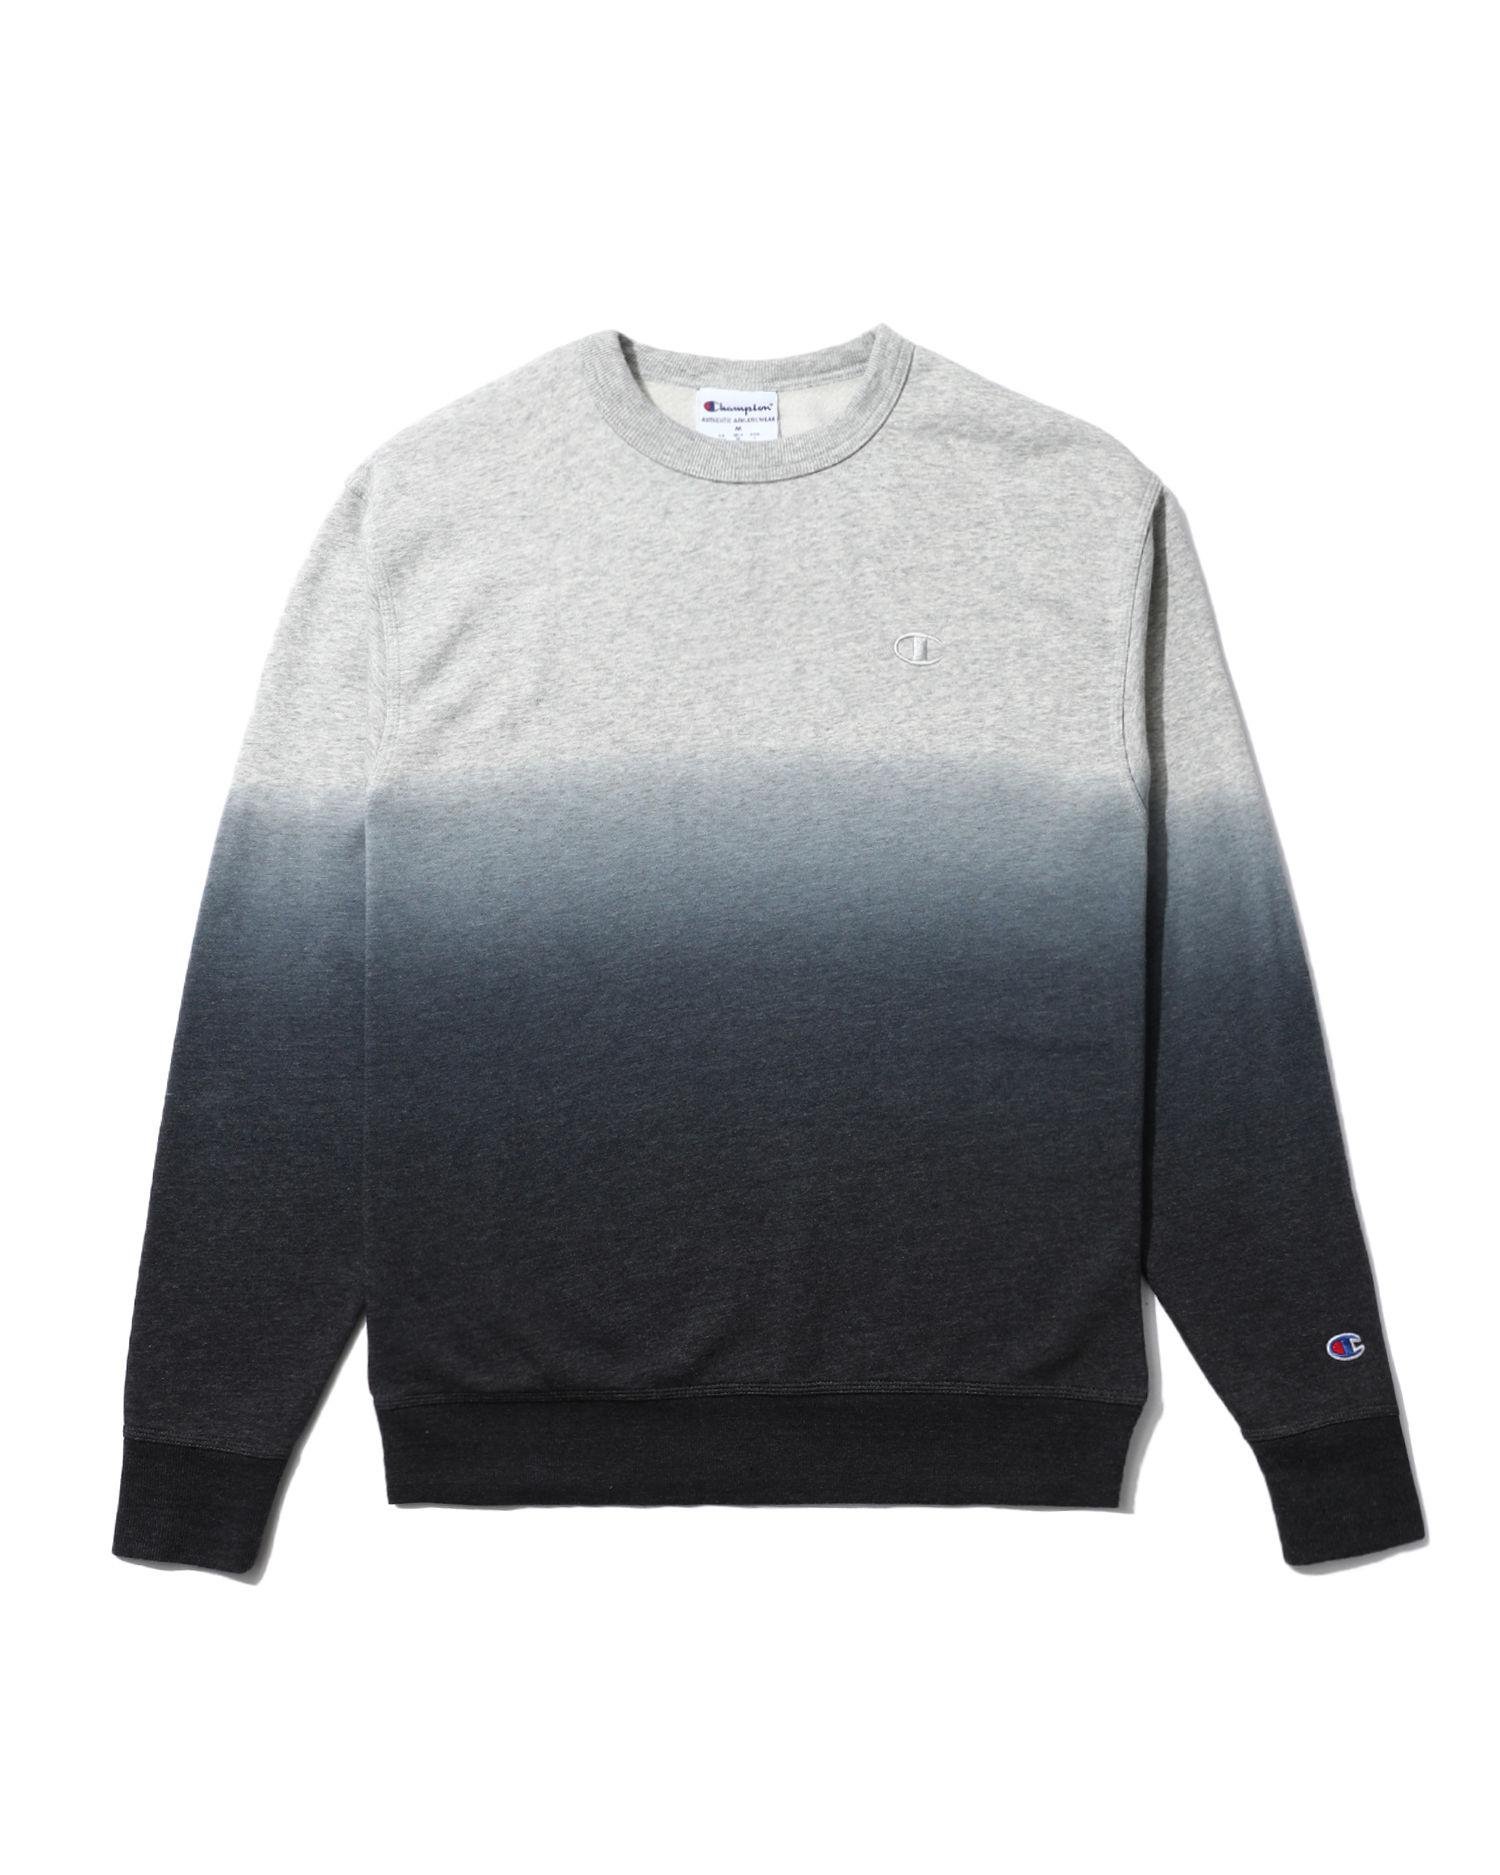 Dip-dye fleece sweatshirt by CHAMPION